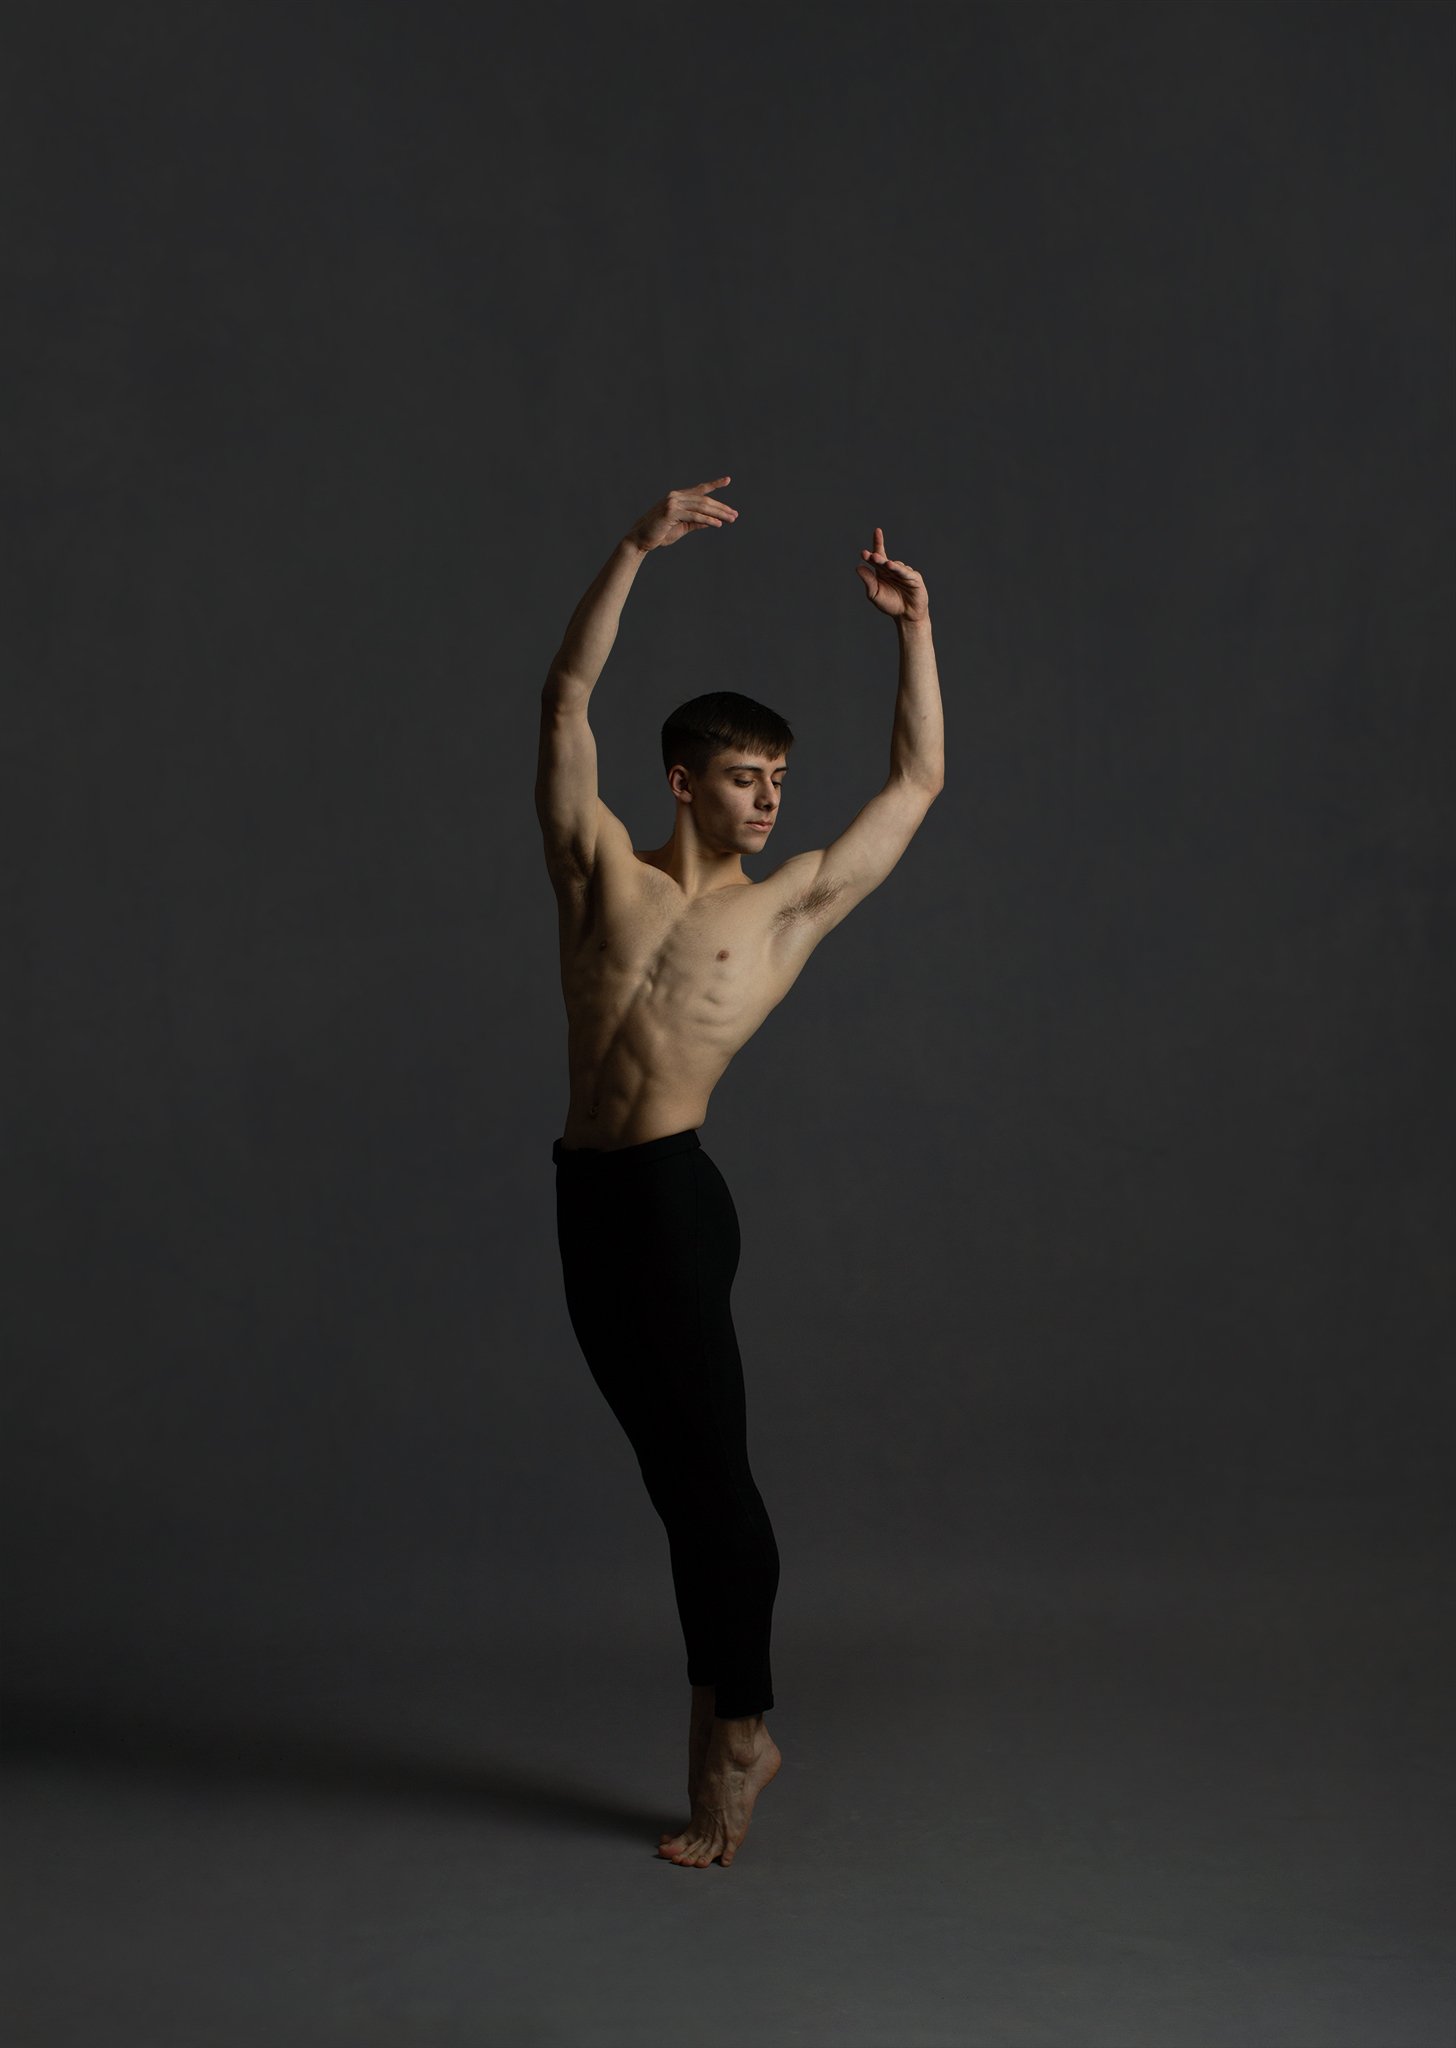 william_davolls_ballet_dance_elmhurst_elizabethg_fineart_photographer_kingslangley_hertfordshire.jpg